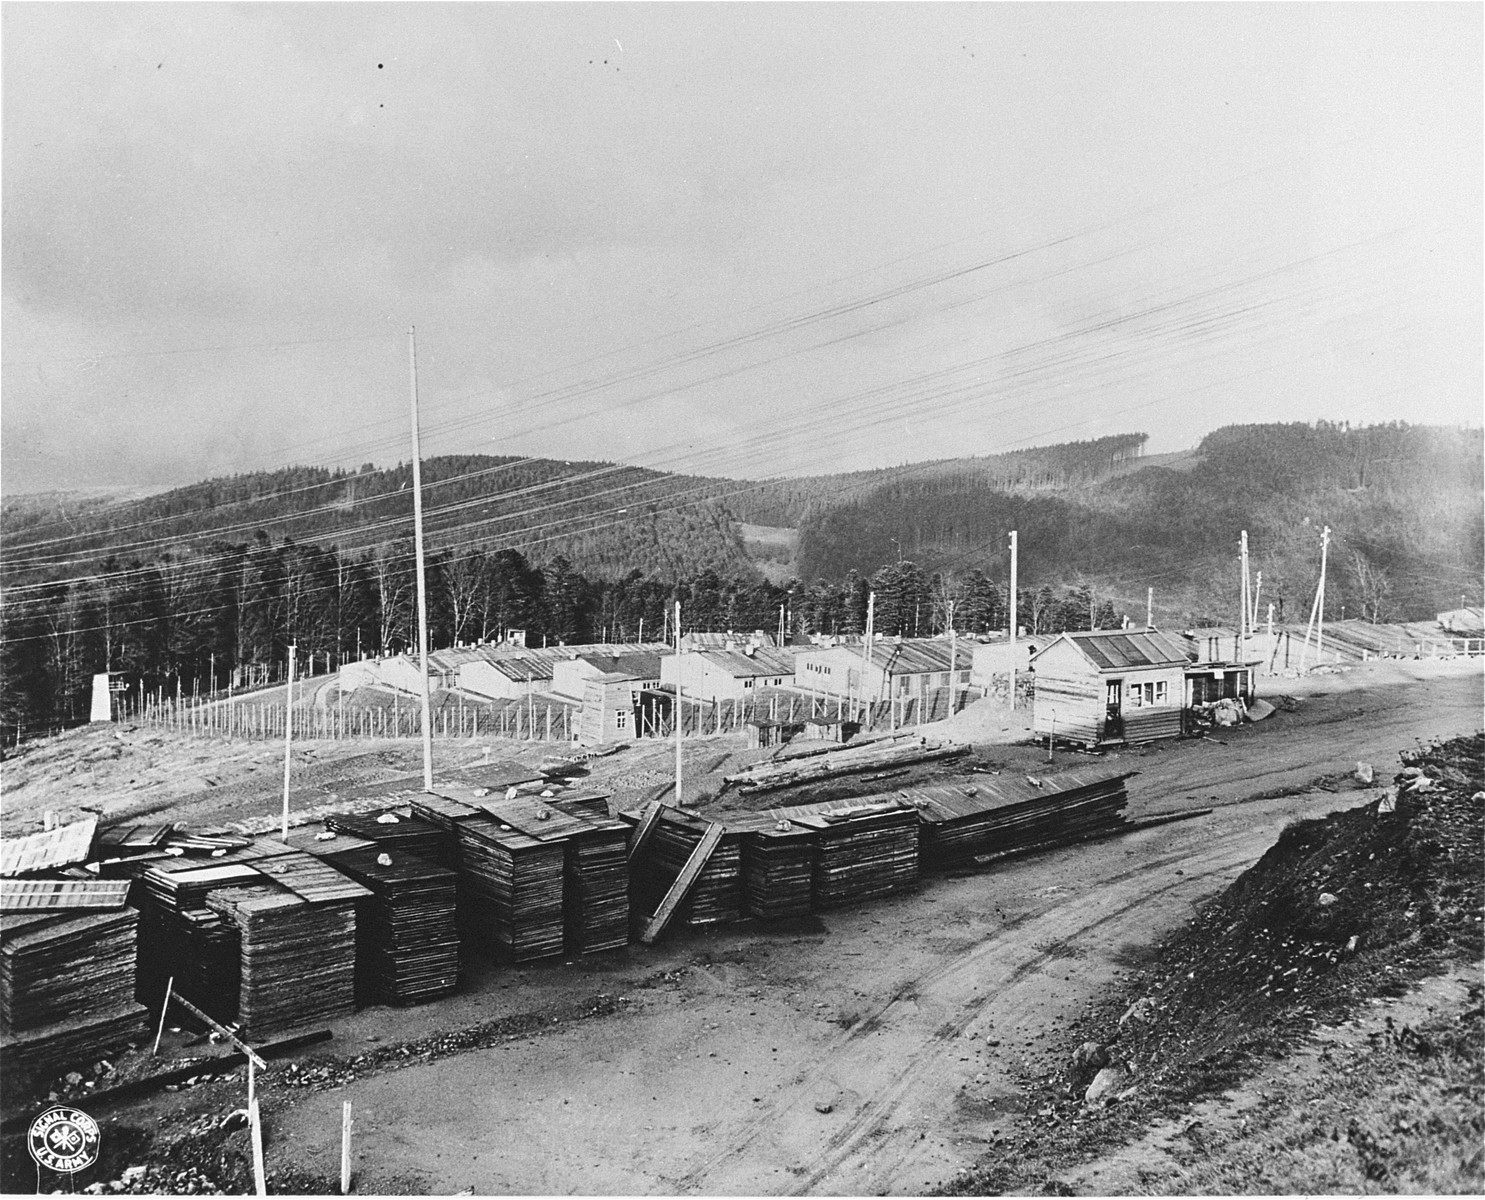 The Natzweiler-Struthof concentration camp.